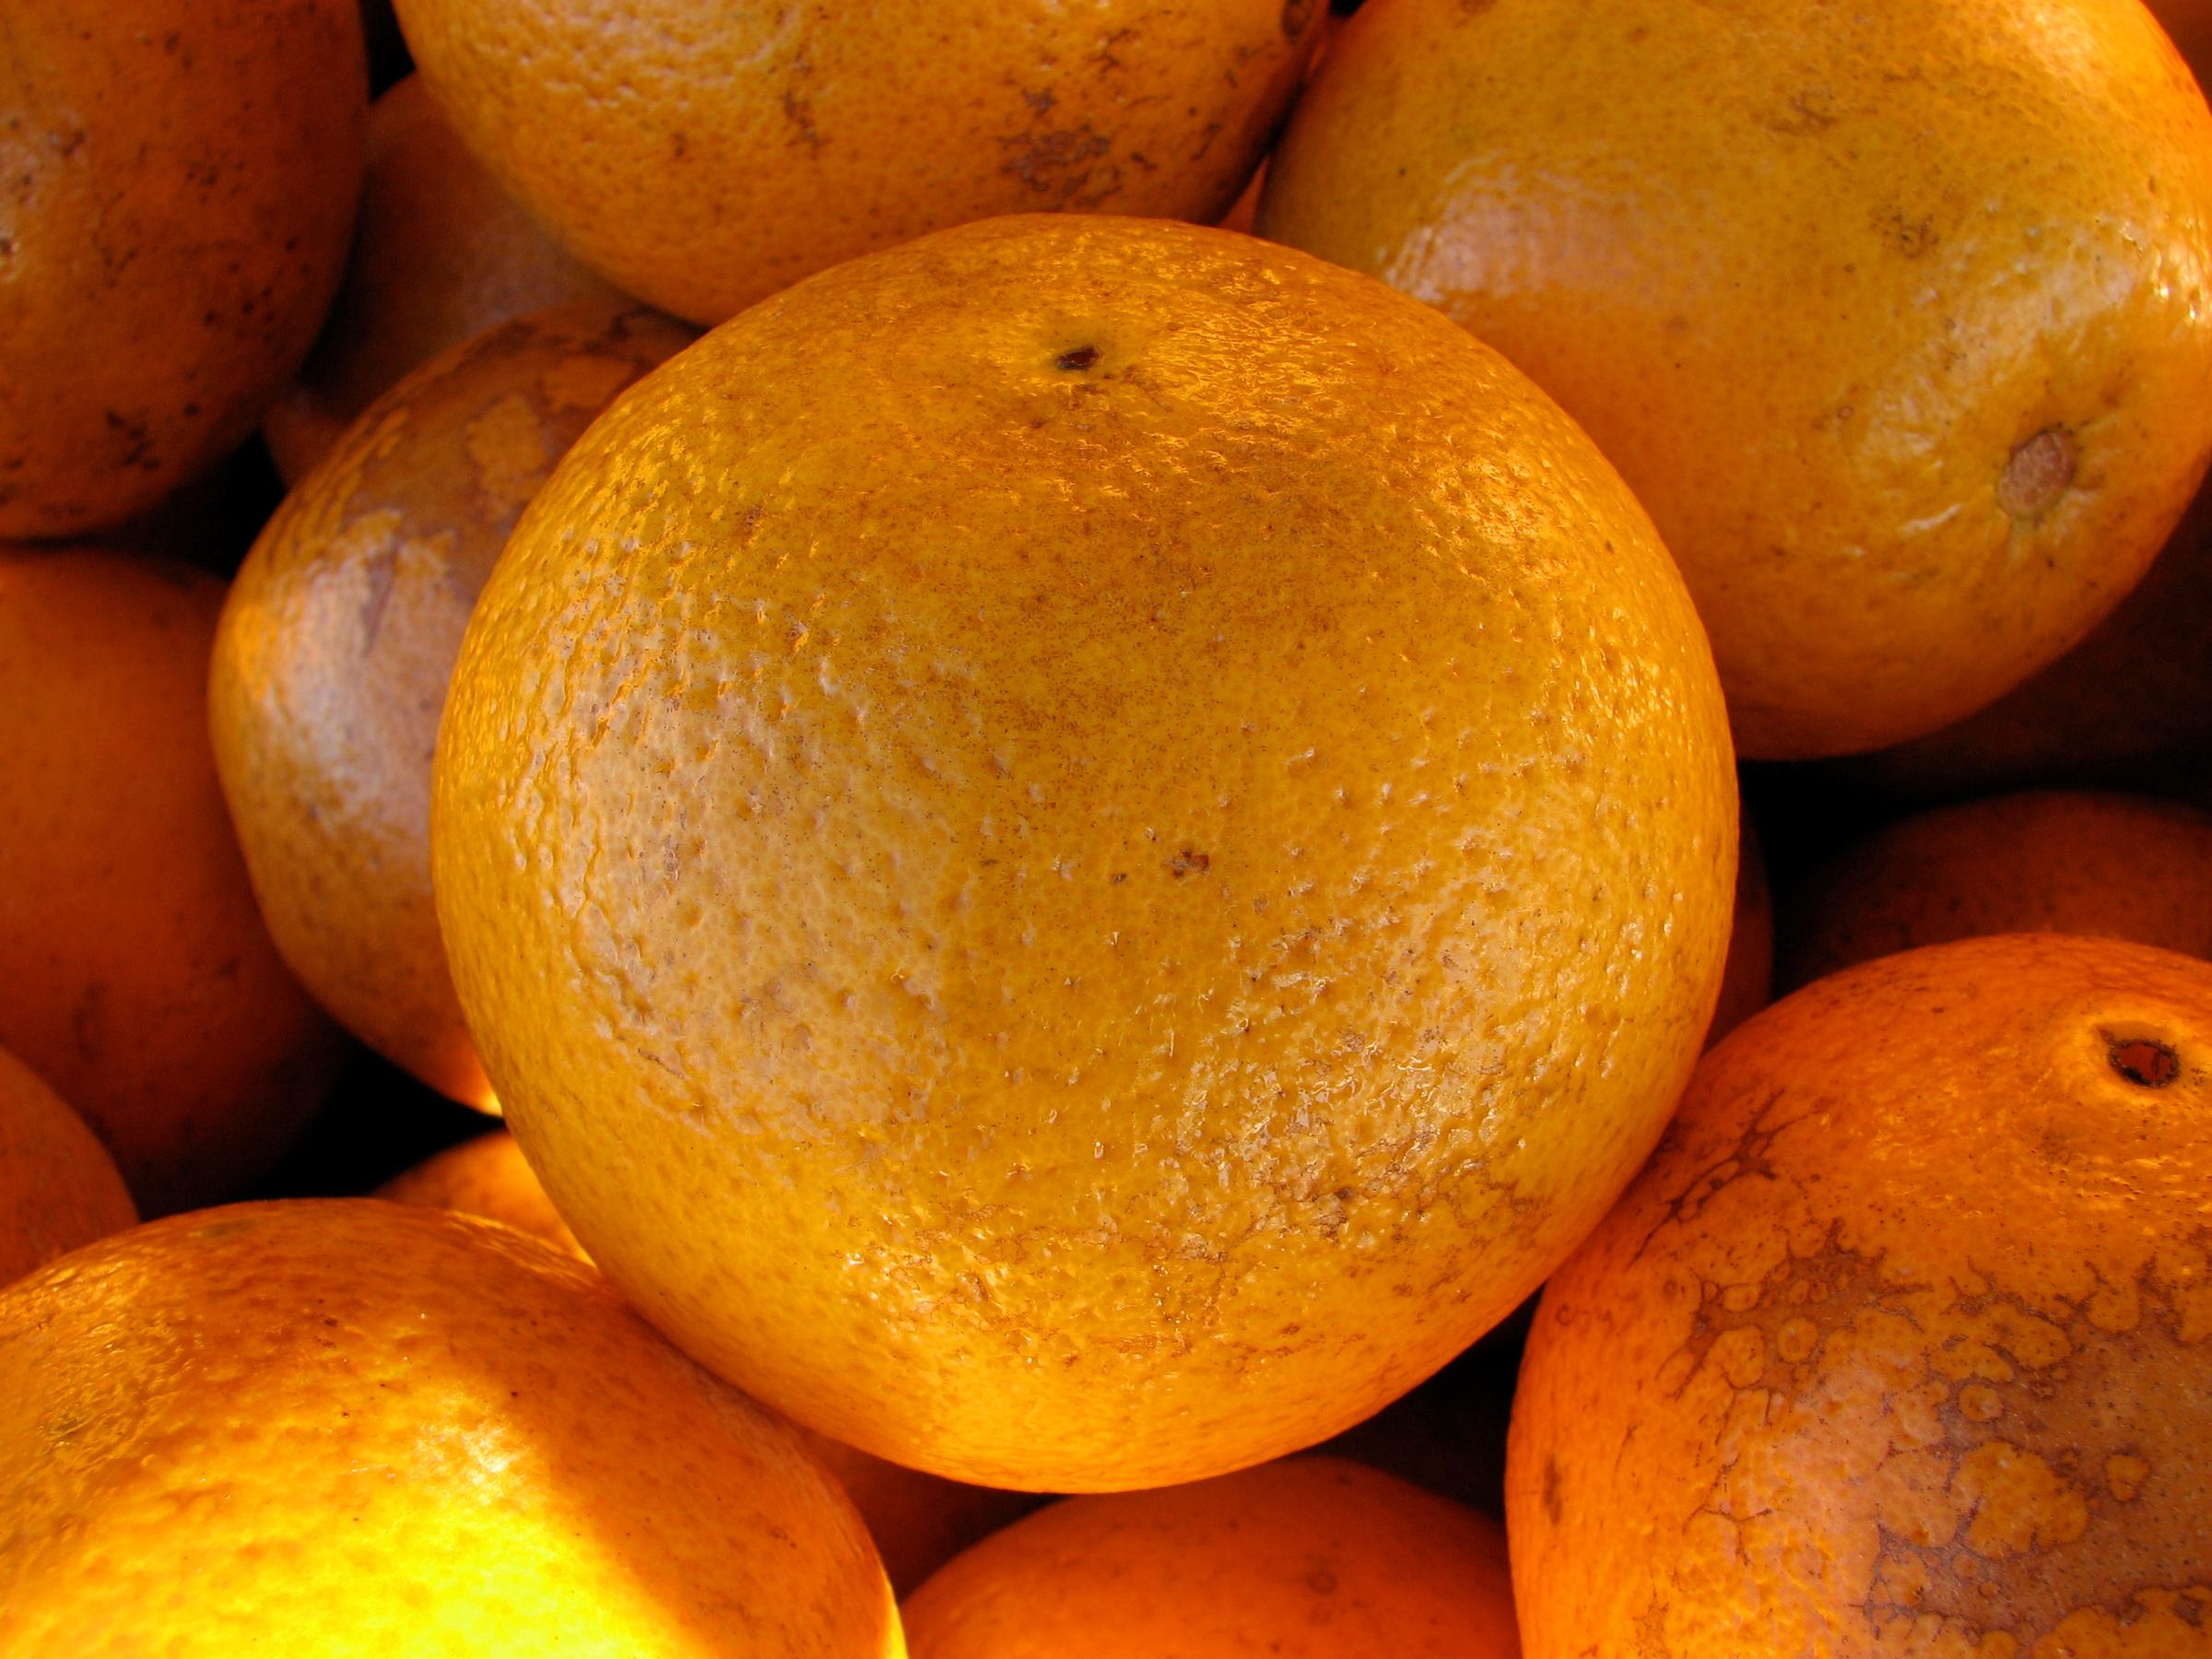 Florida's Orange Crop Estimate Gets Sunnier WGCU News